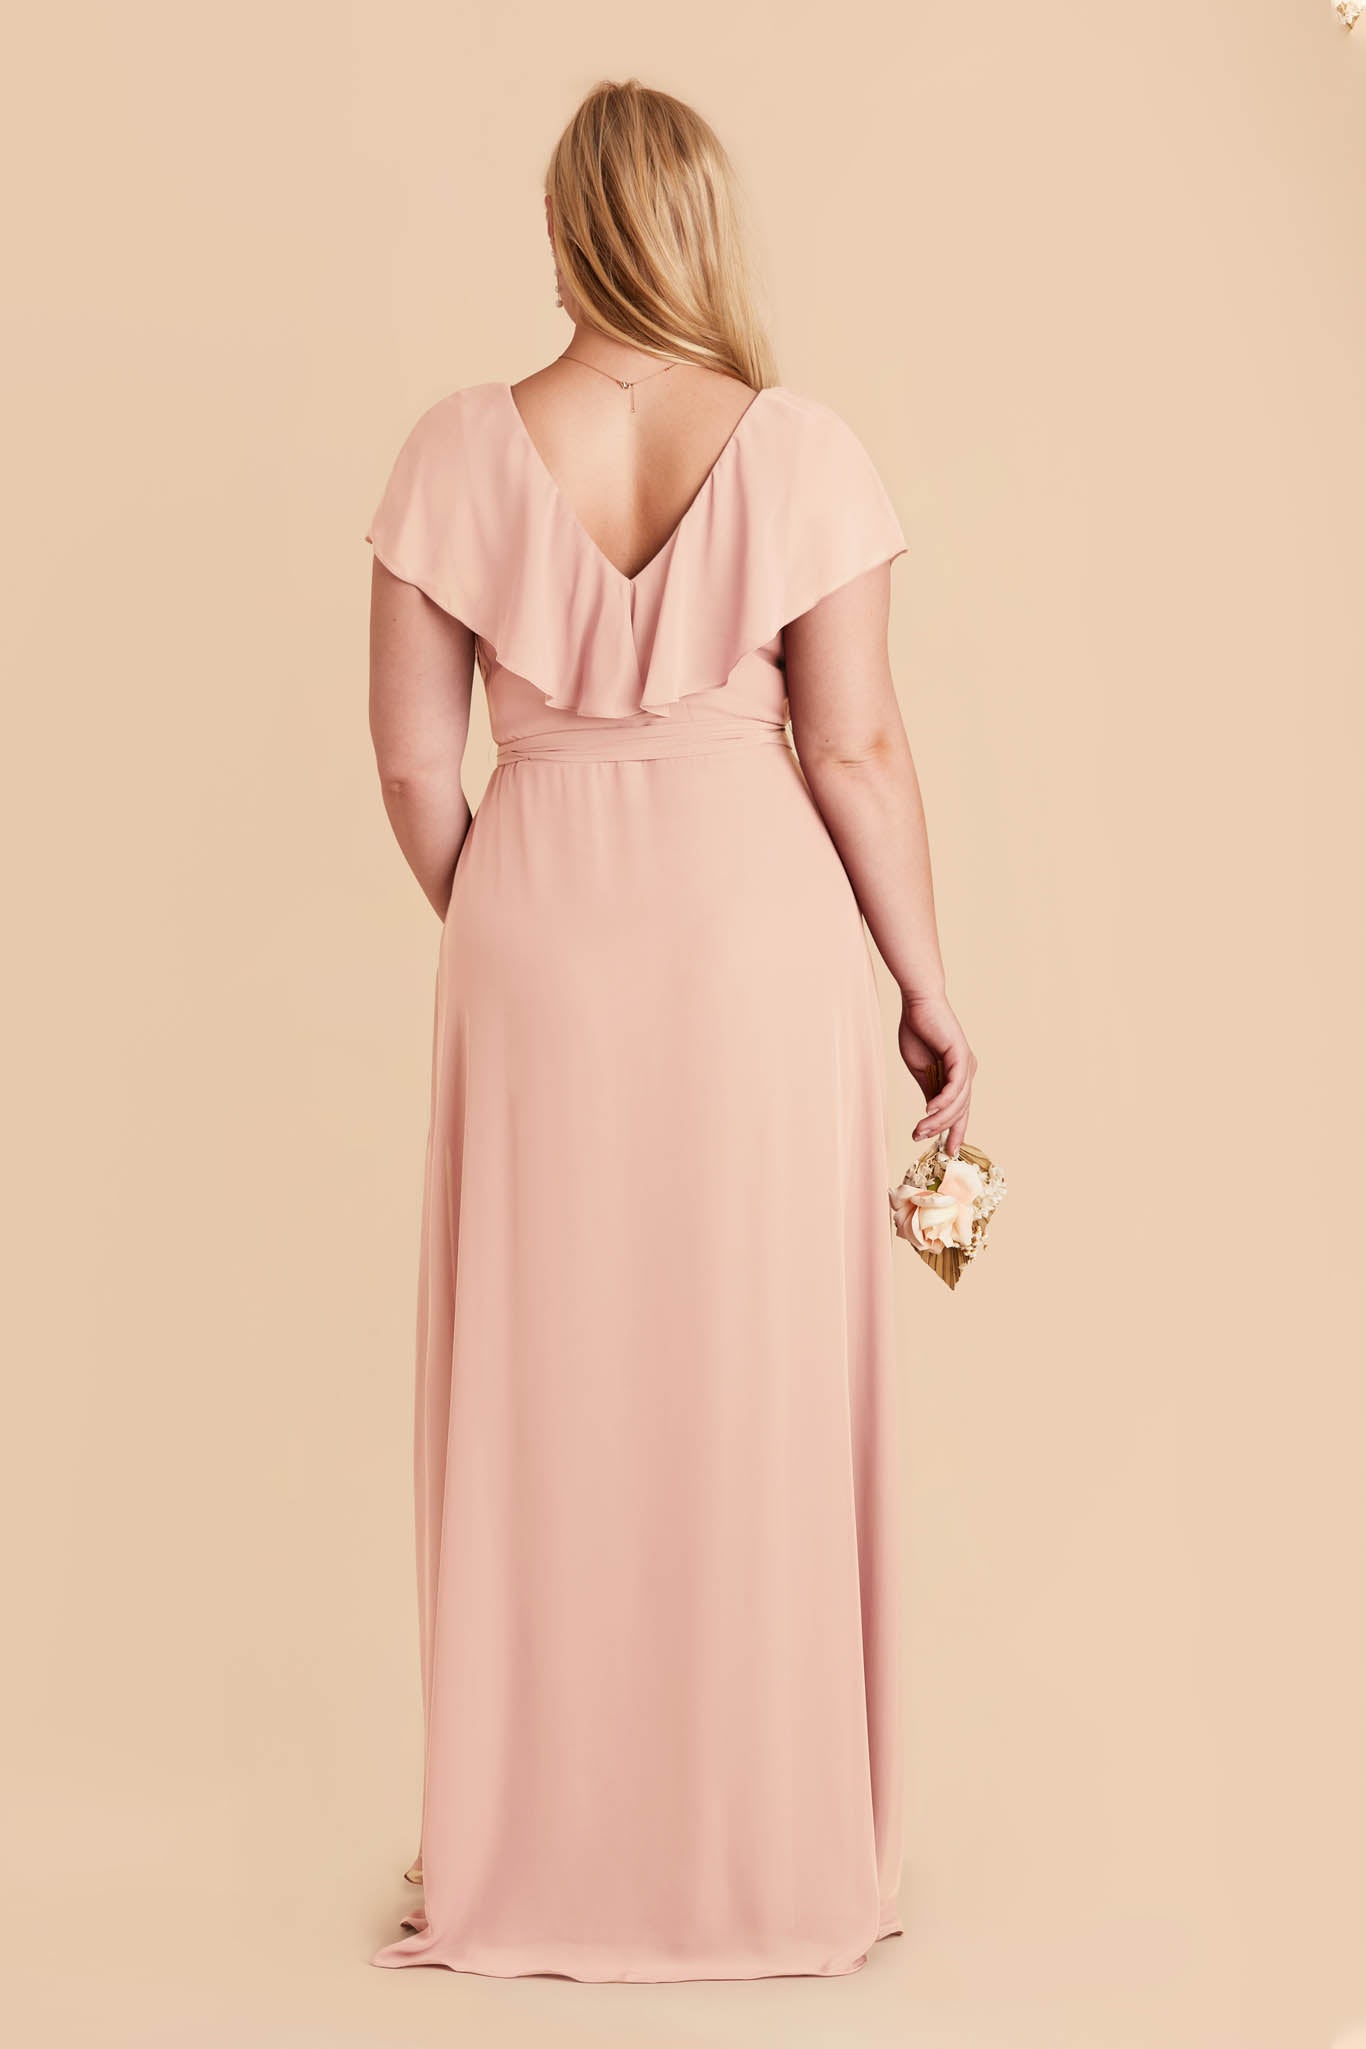 Blush Pink Jackson Chiffon Dress by Birdy Grey